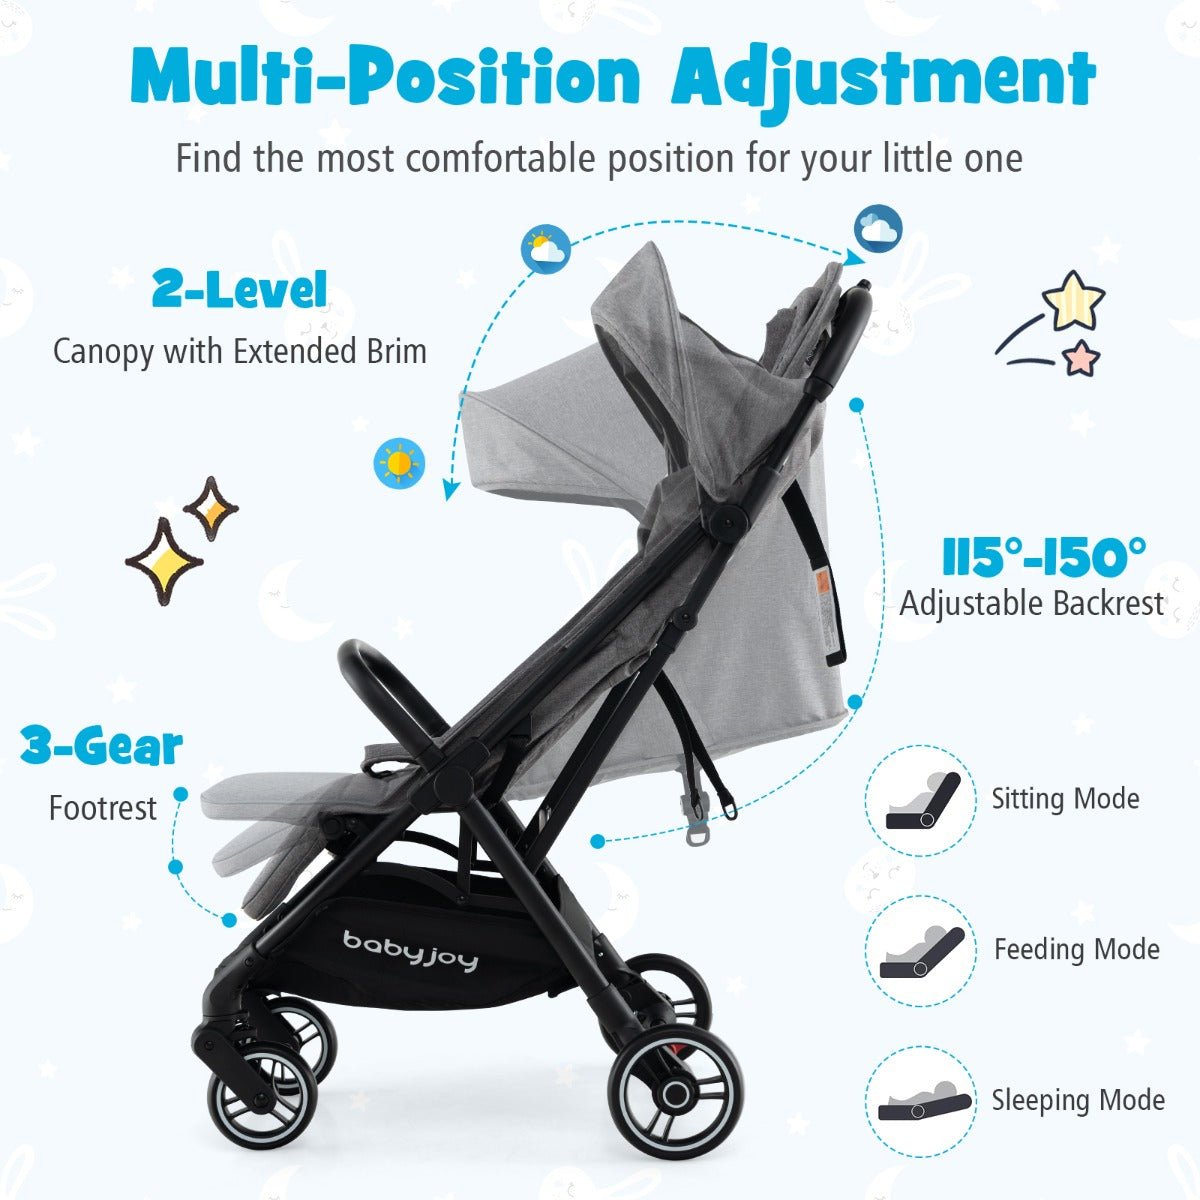 Portable Infant Stroller with Adjustable Backrest 6-36 Months Recommended Age-Dark Grey - Kids Mega Mart